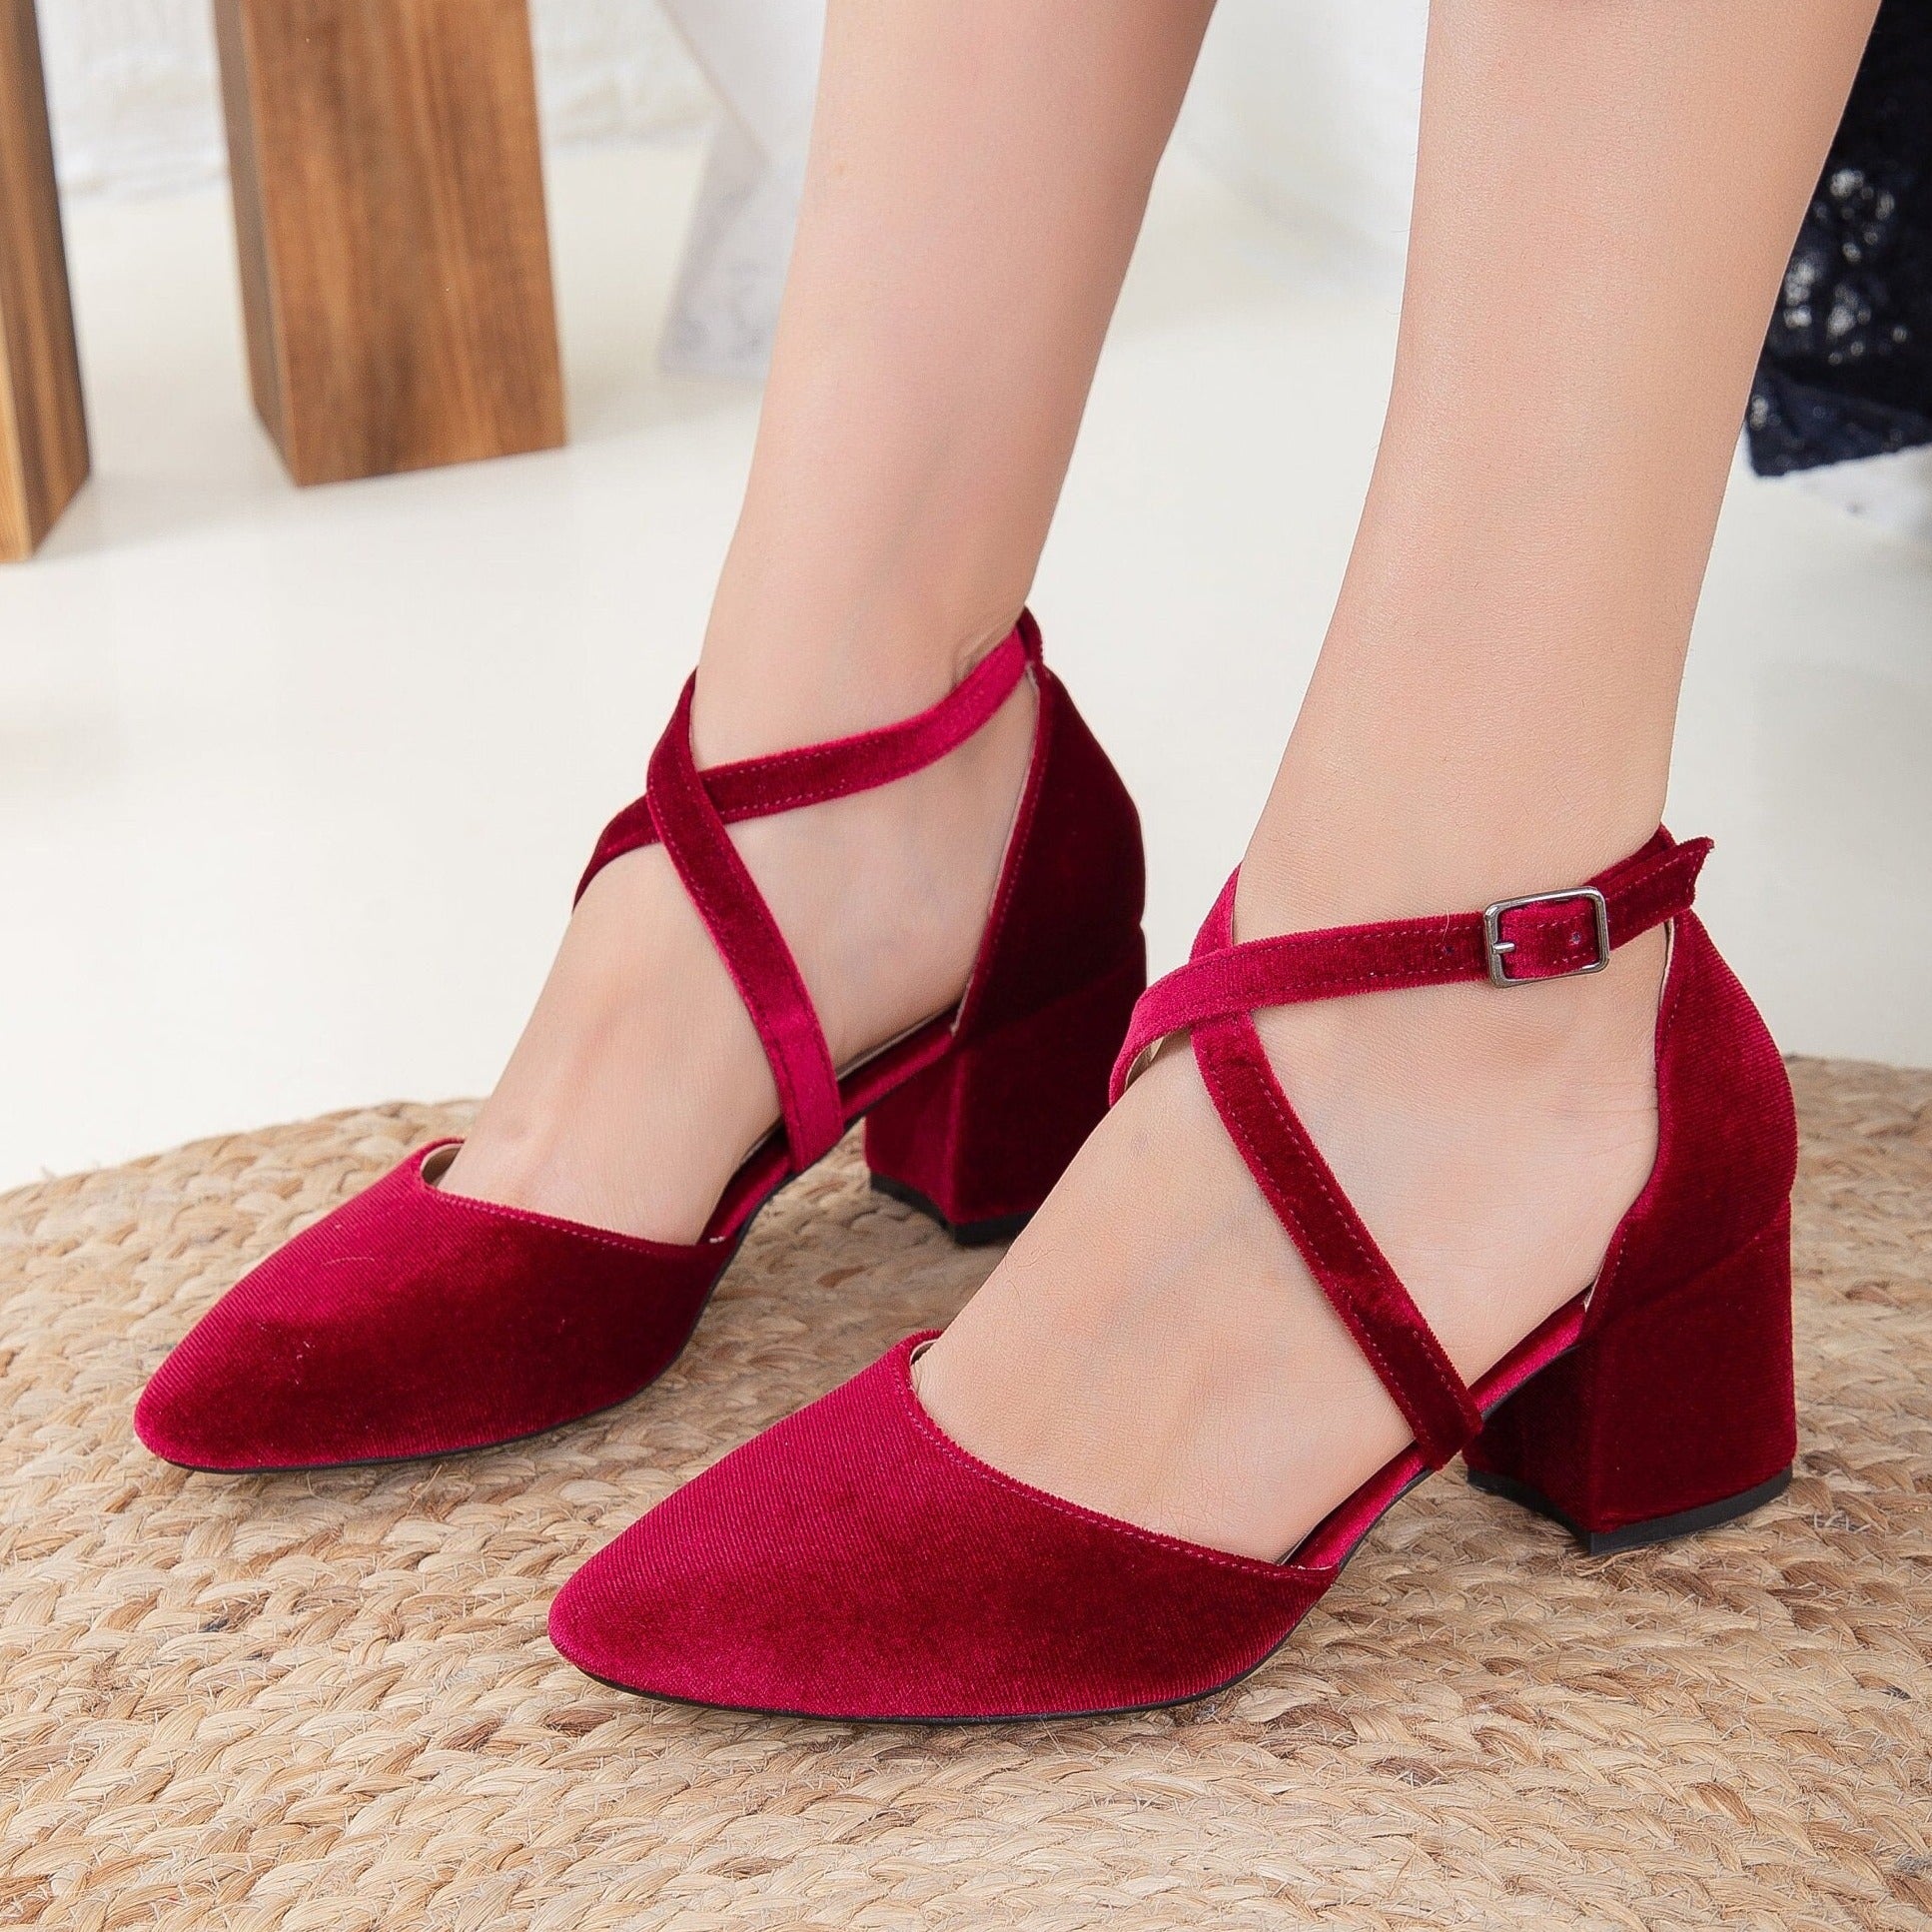 ASOS DESIGN Samson slingback mid heels in burgundy velvet | ASOS | Women  shoes, Burgundy shoes, Heels